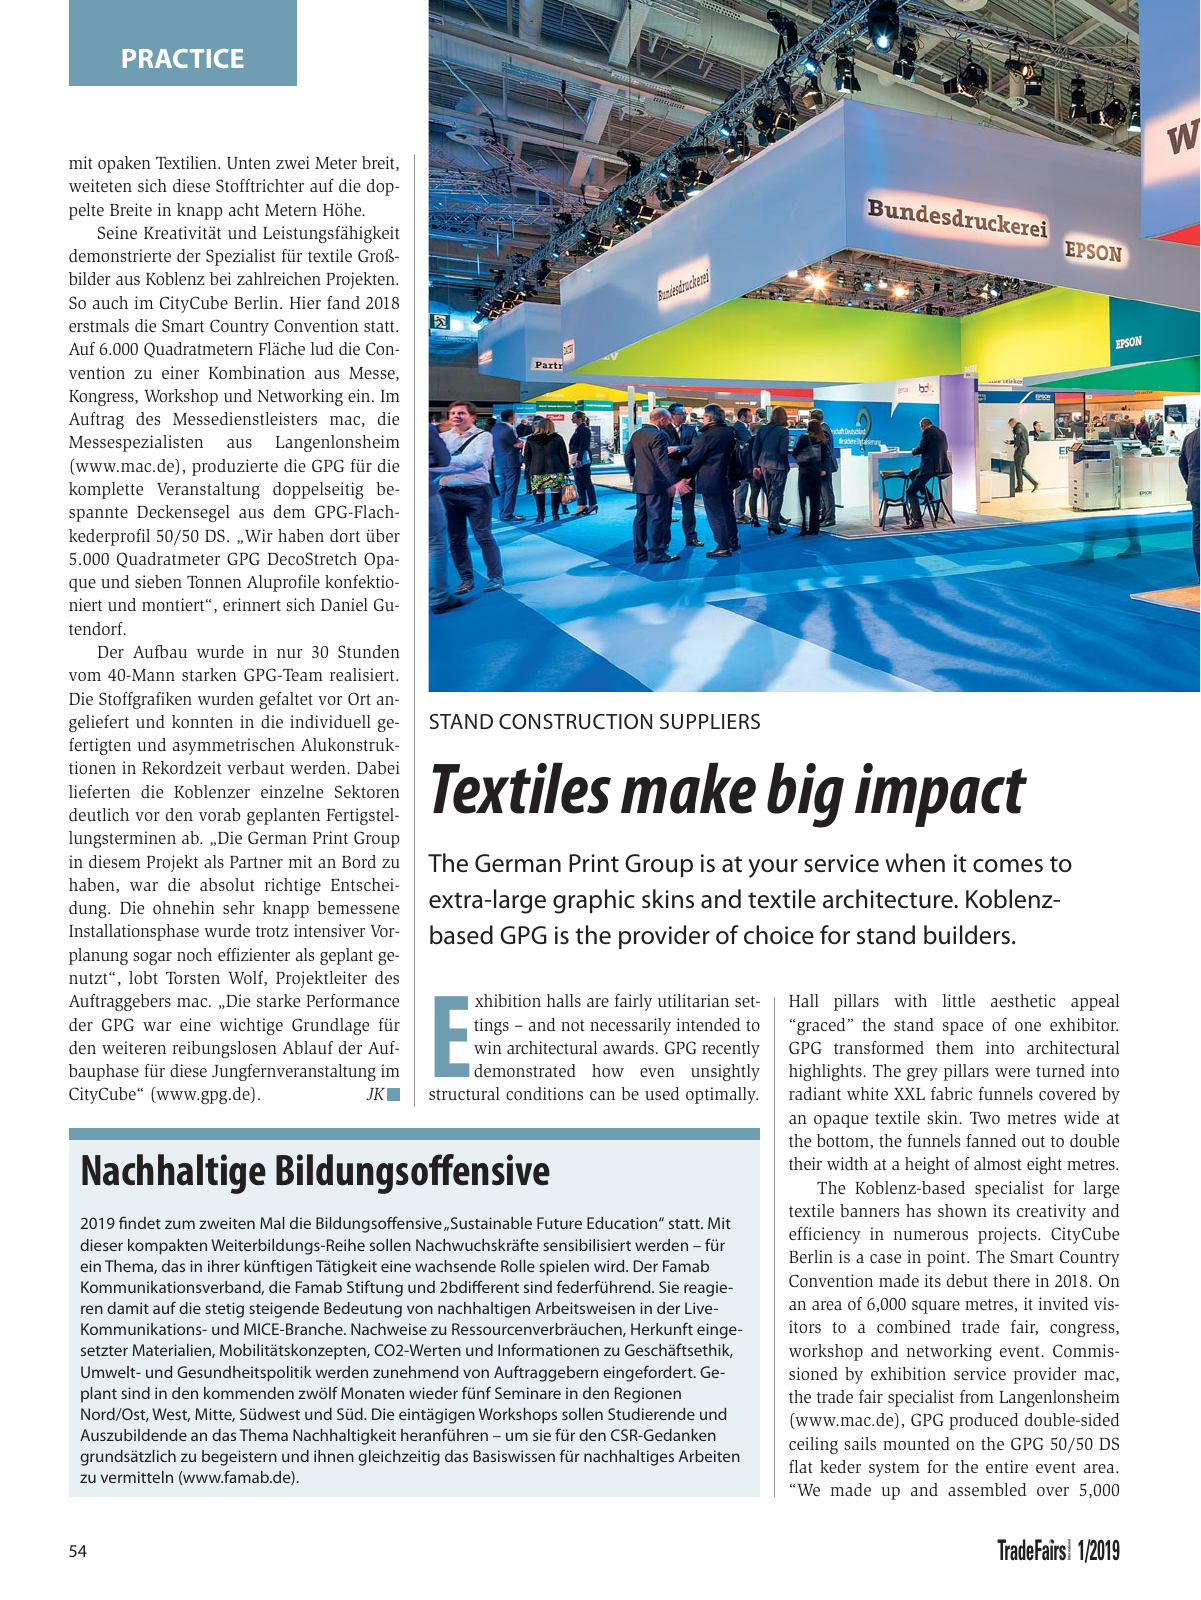 Vorschau TFI Trade-Fairs-International 01/2019 Seite 54